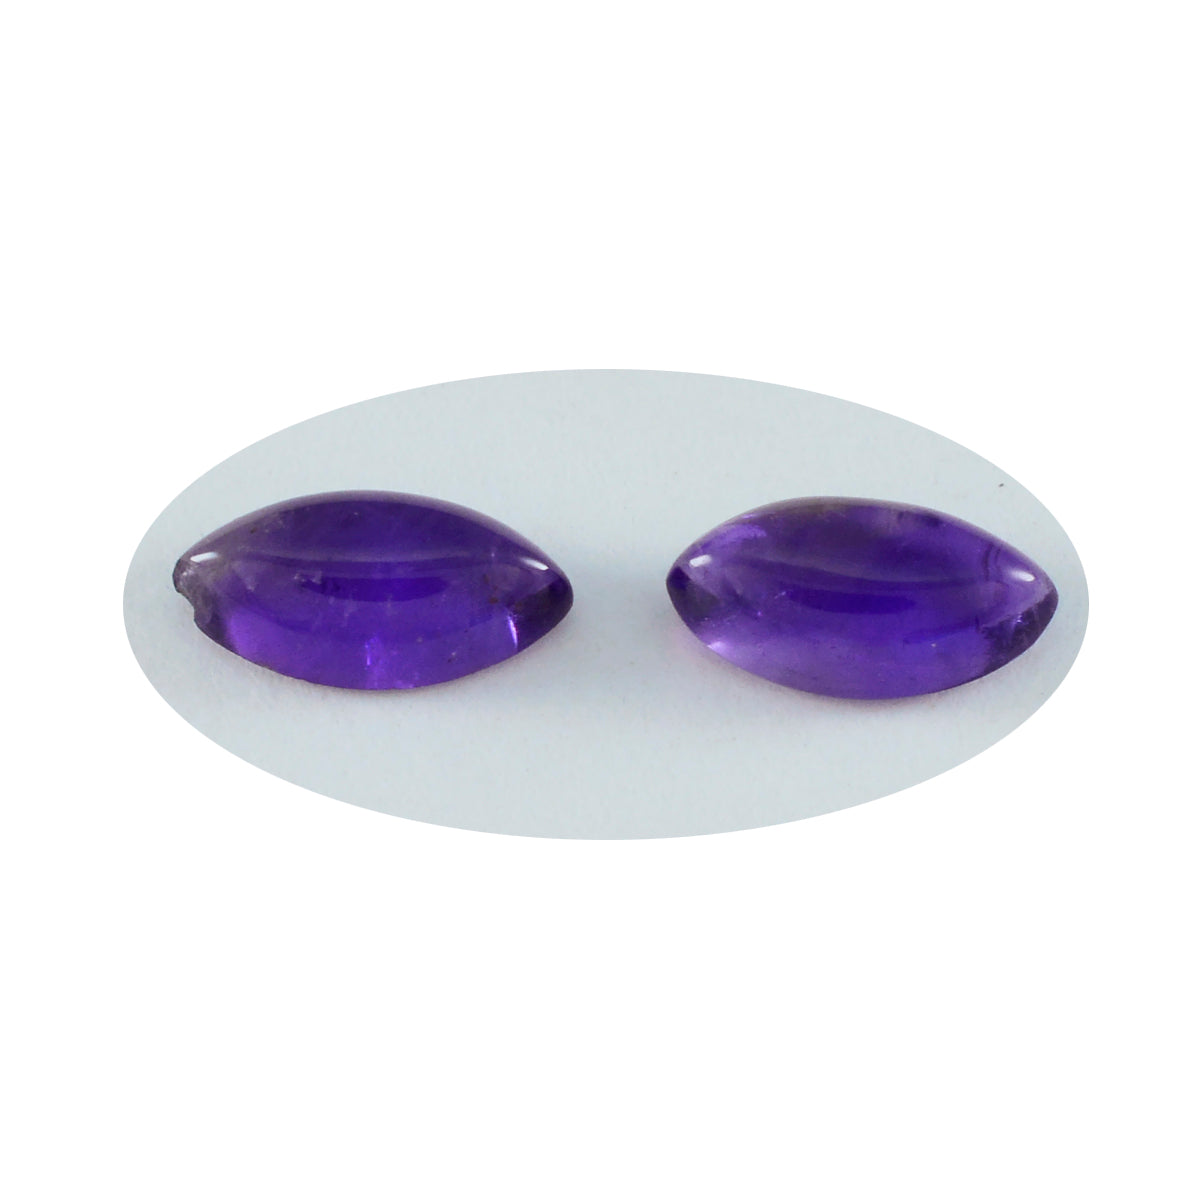 riyogems 1 шт., фиолетовый аметист, кабошон 4x8 мм, форма маркизы, красивые качественные драгоценные камни